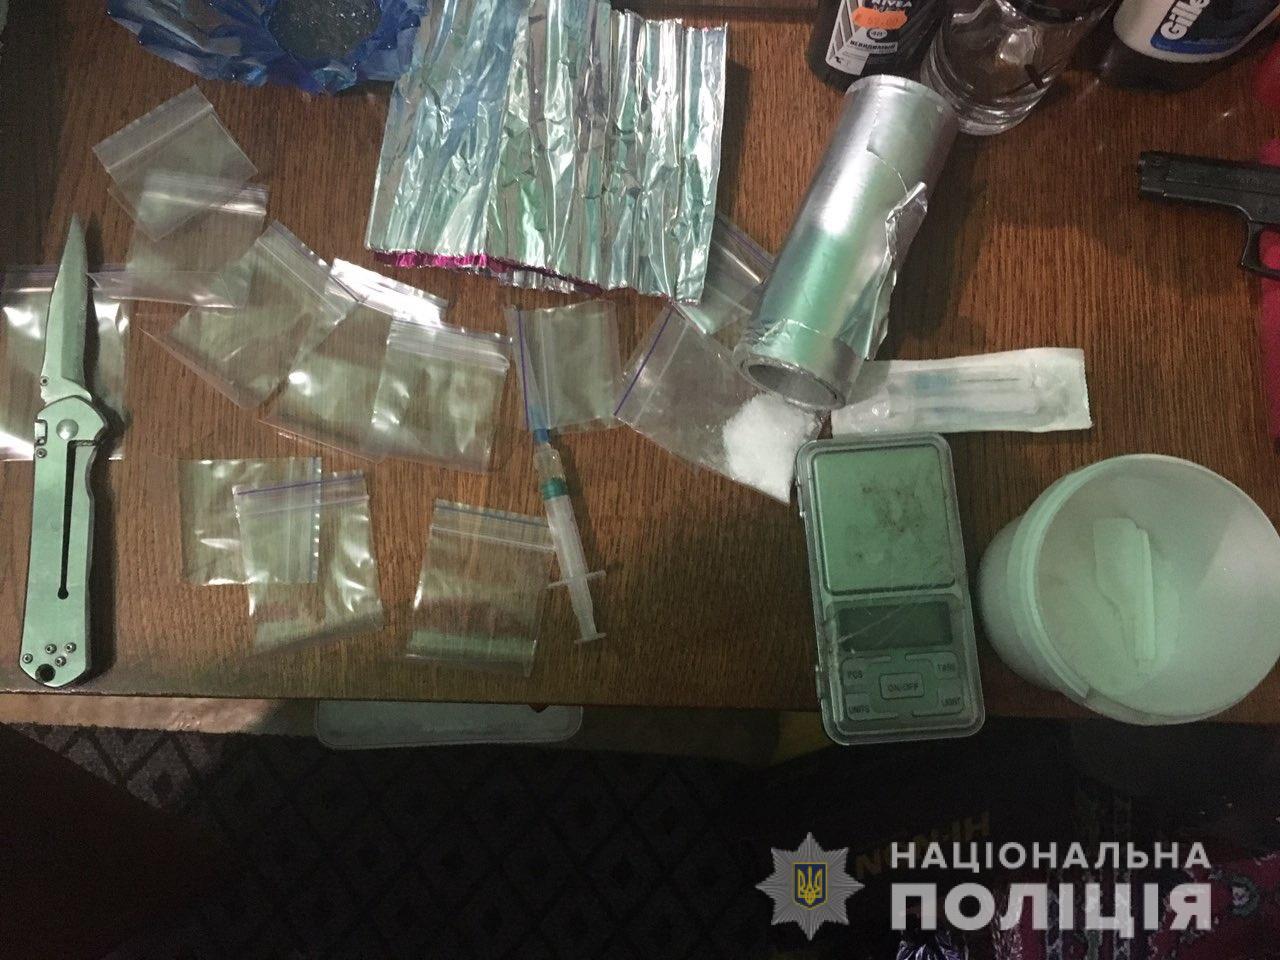 Під час обшуку будинку мешканця Мукачева знайшли метамфетамін, опій та ювелірні ваги (ФОТО)